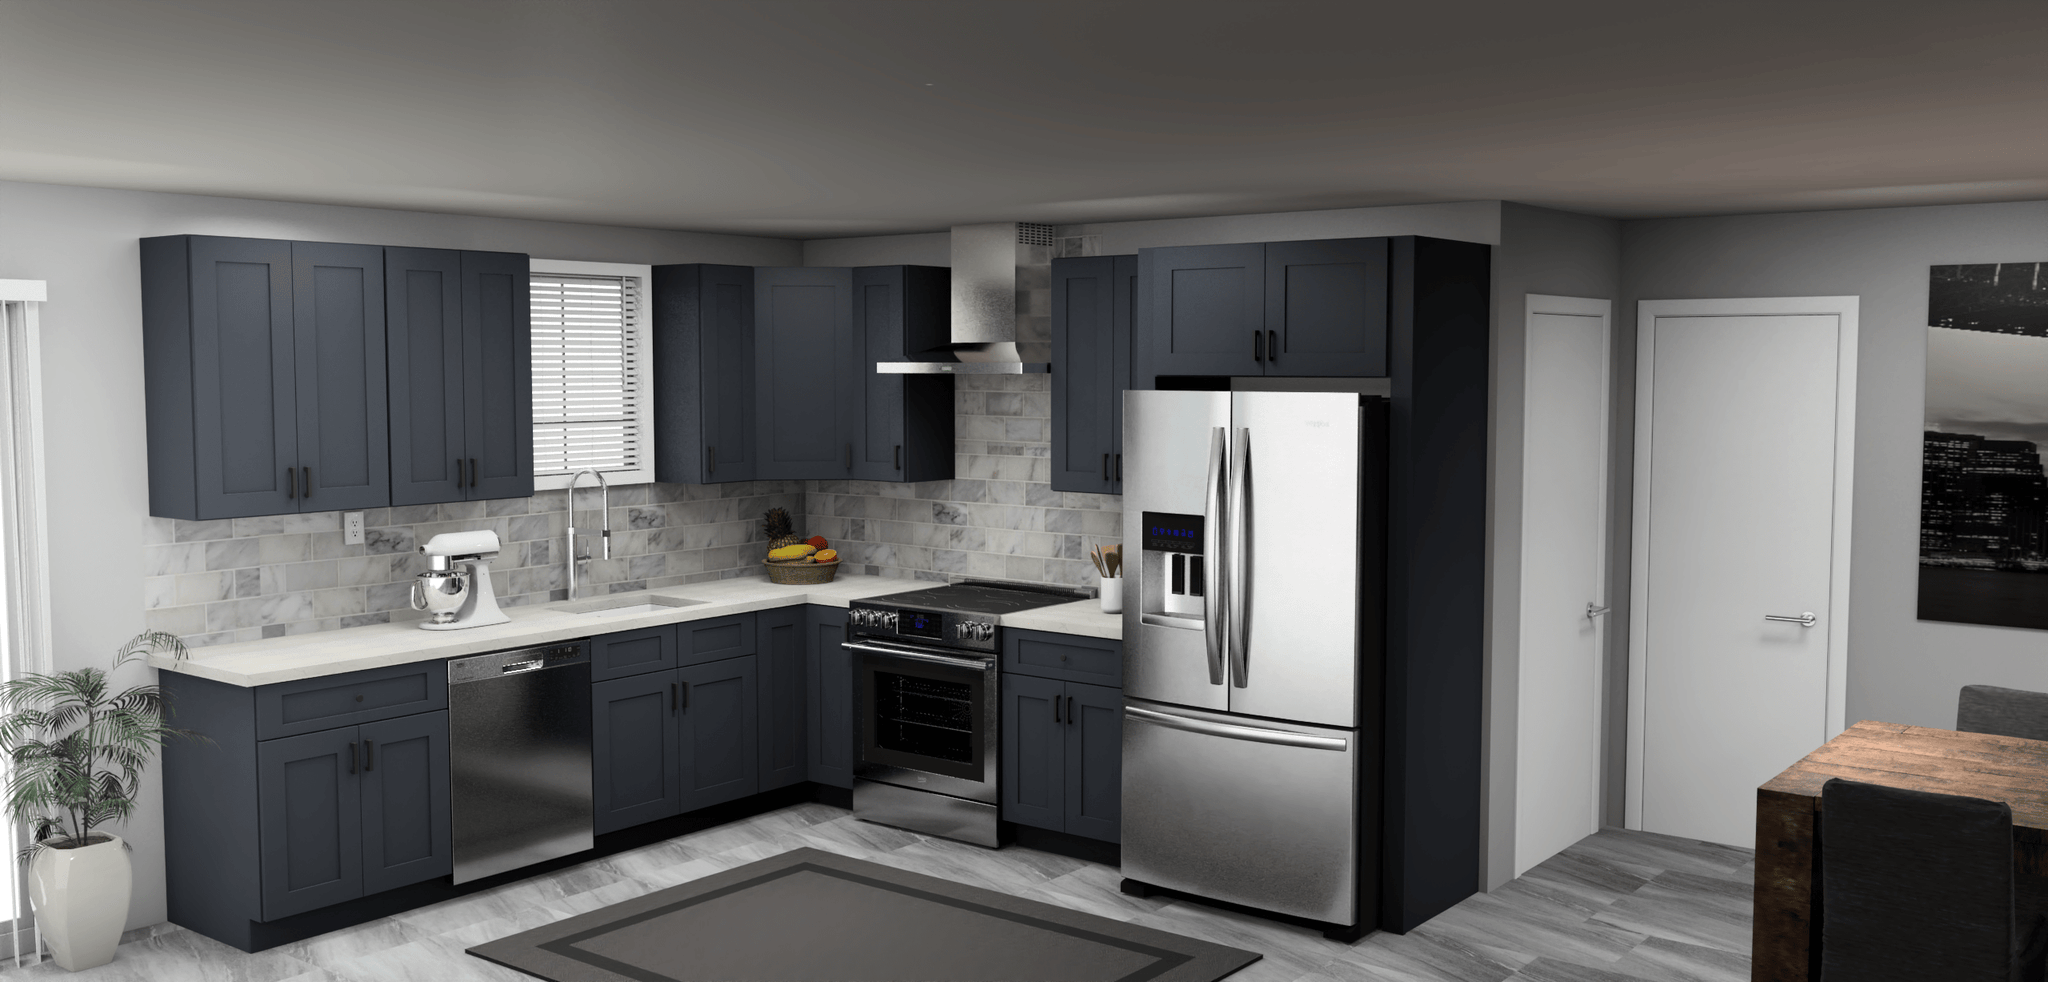 Fabuwood Allure Galaxy Indigo 10 x 11 L Shaped Kitchen Main Layout Photo